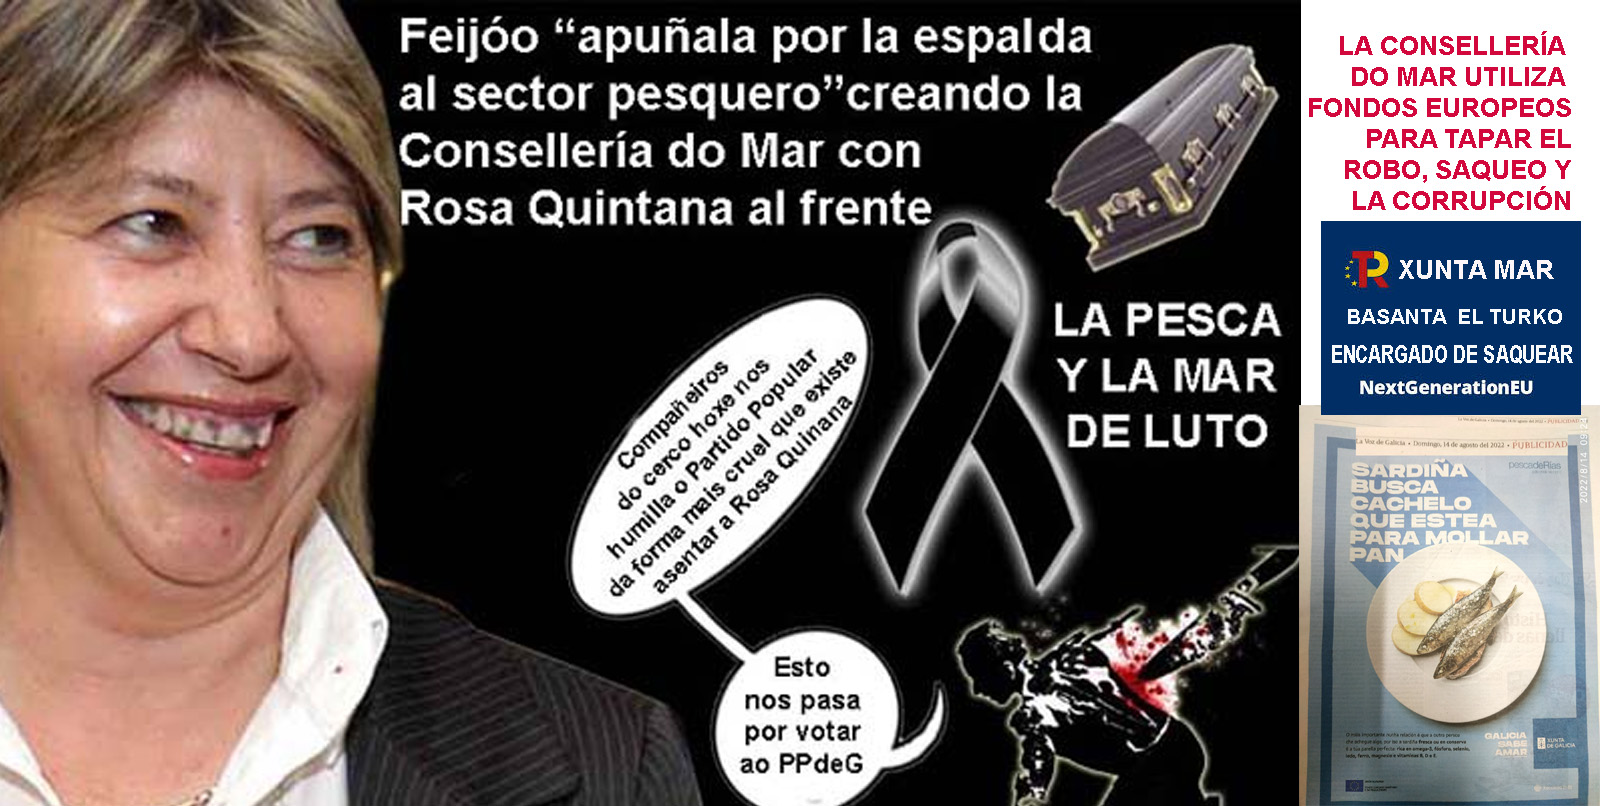 Rosa Quintana se apodera de la corrupción que dejo Feijóo en la Xunta de  Galicia, ignora el Plan Cangal "evitar muerte marisco rías" y utiliza el  dinero europeo para corromper con dádivas (